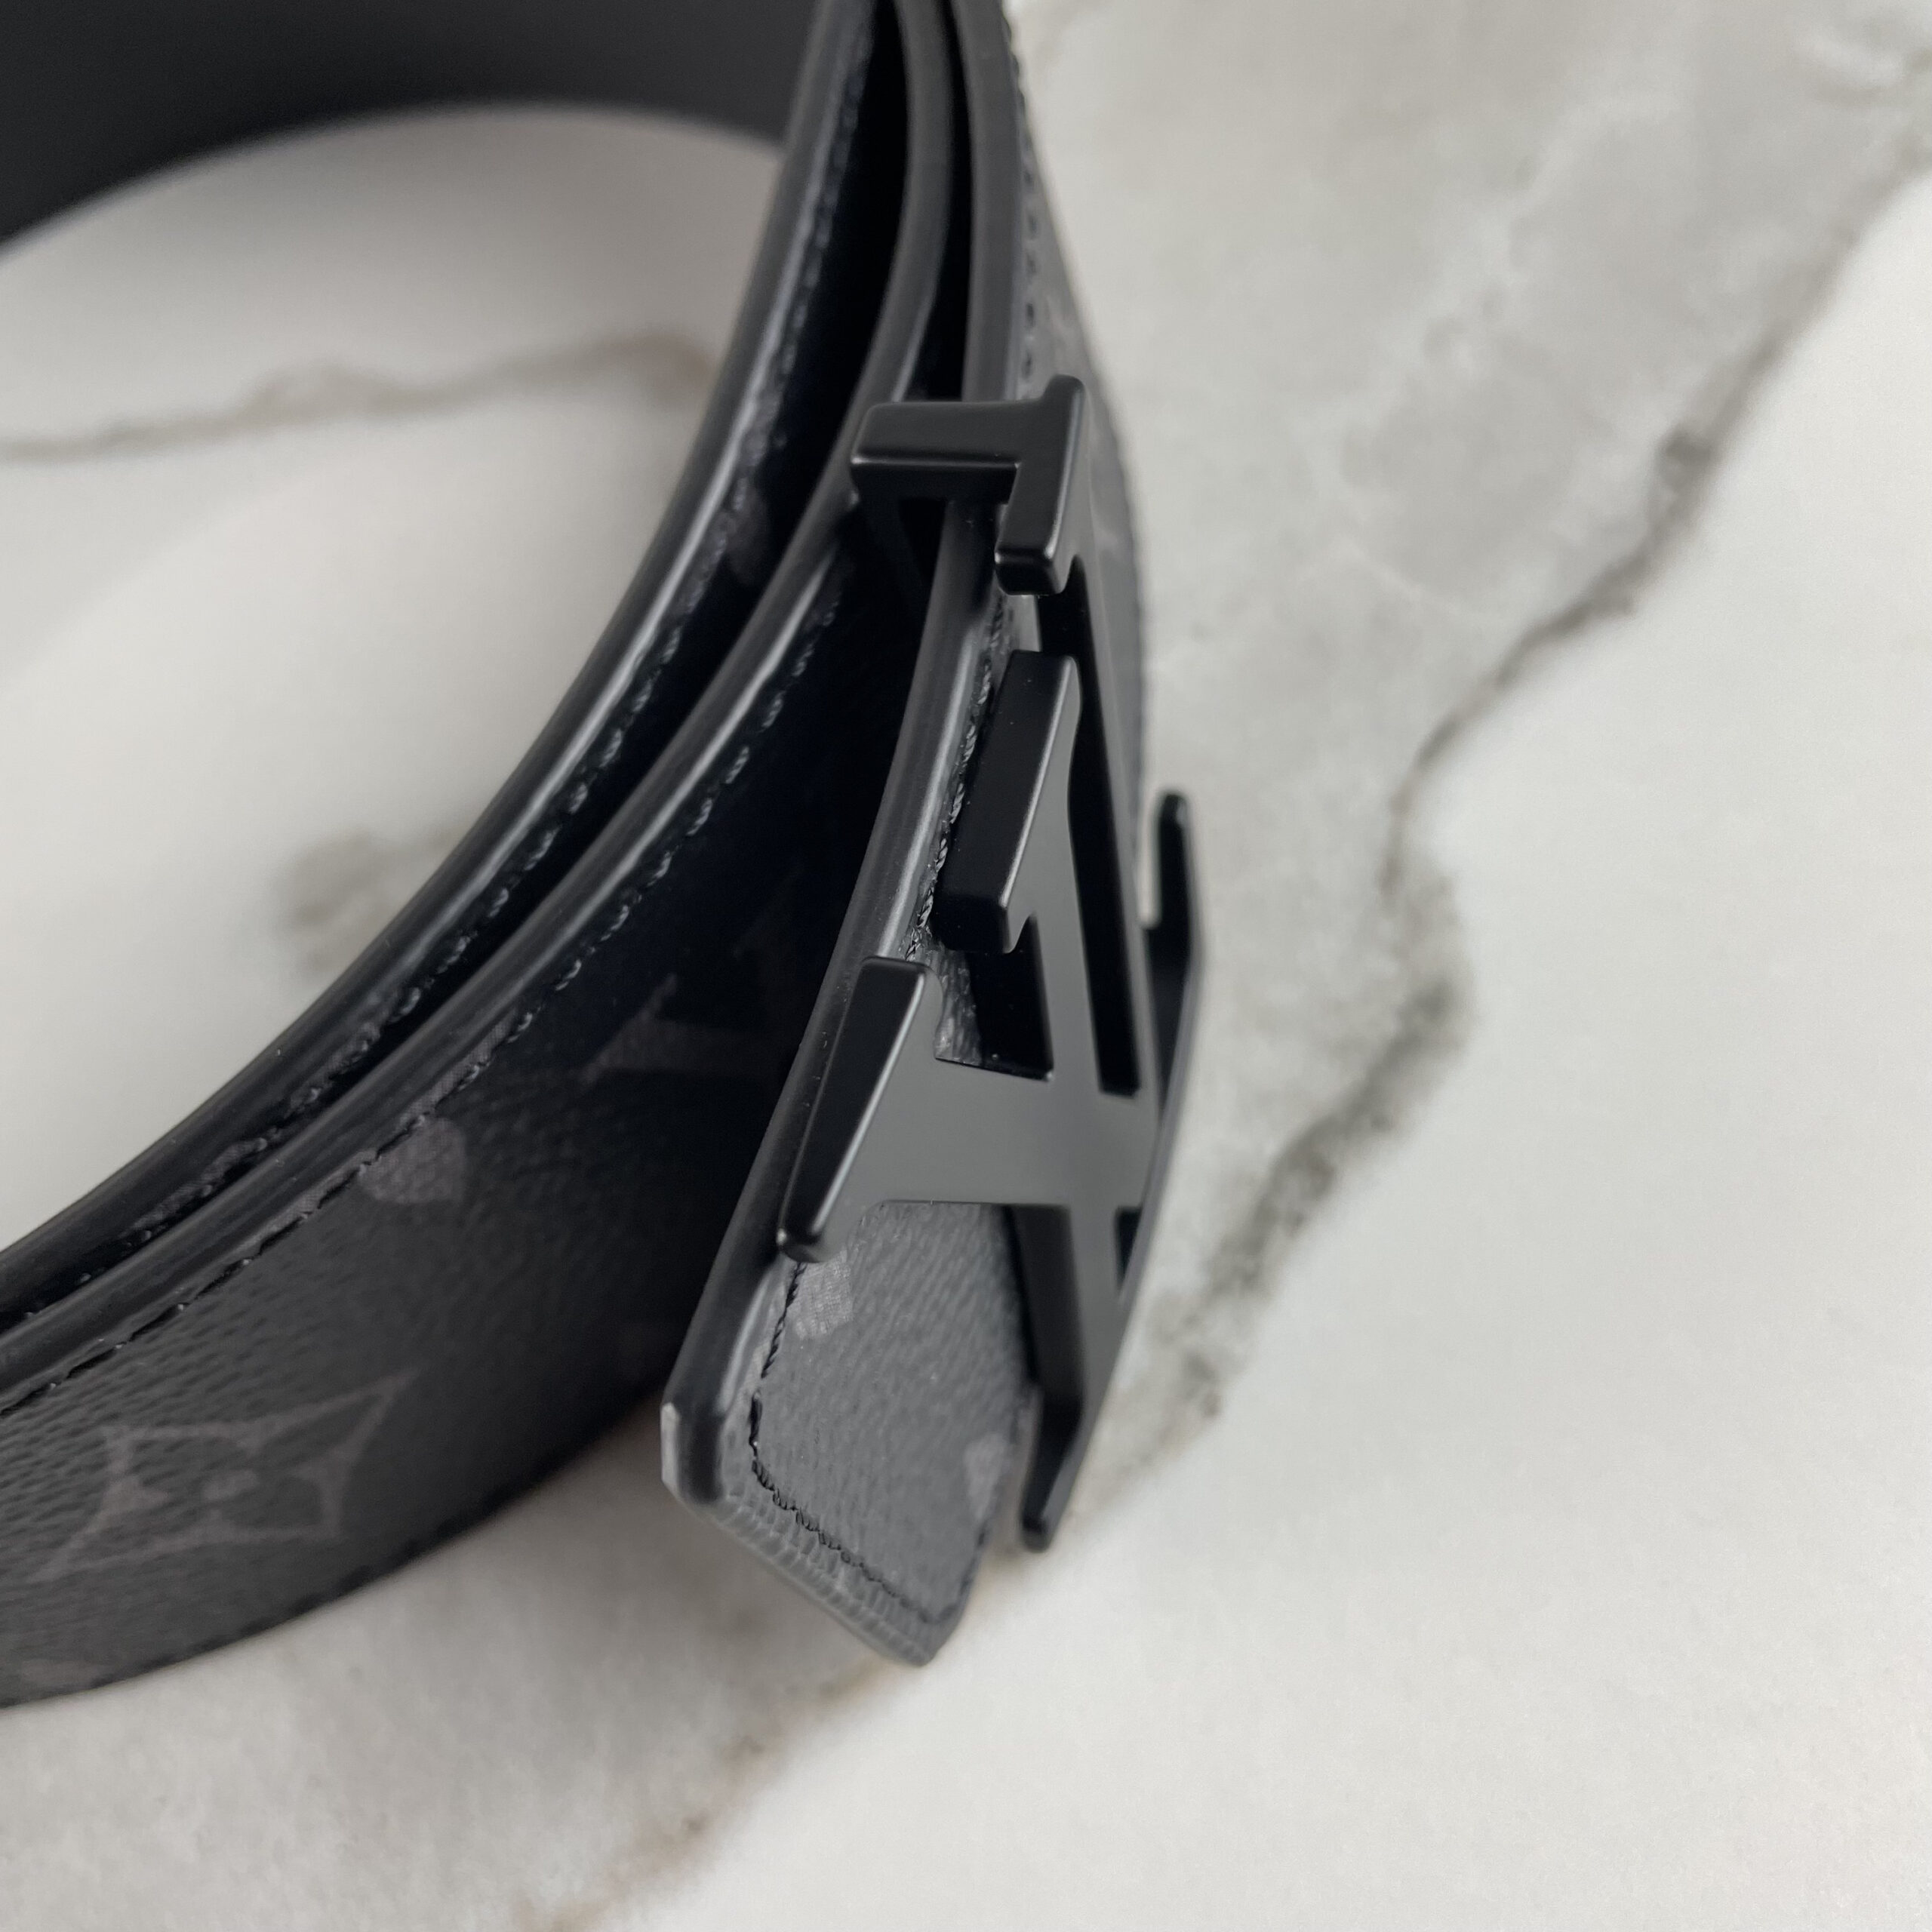 Louis Vuitton Monogram Eclipse Canvas LV Initials 40mm Matte black Belt